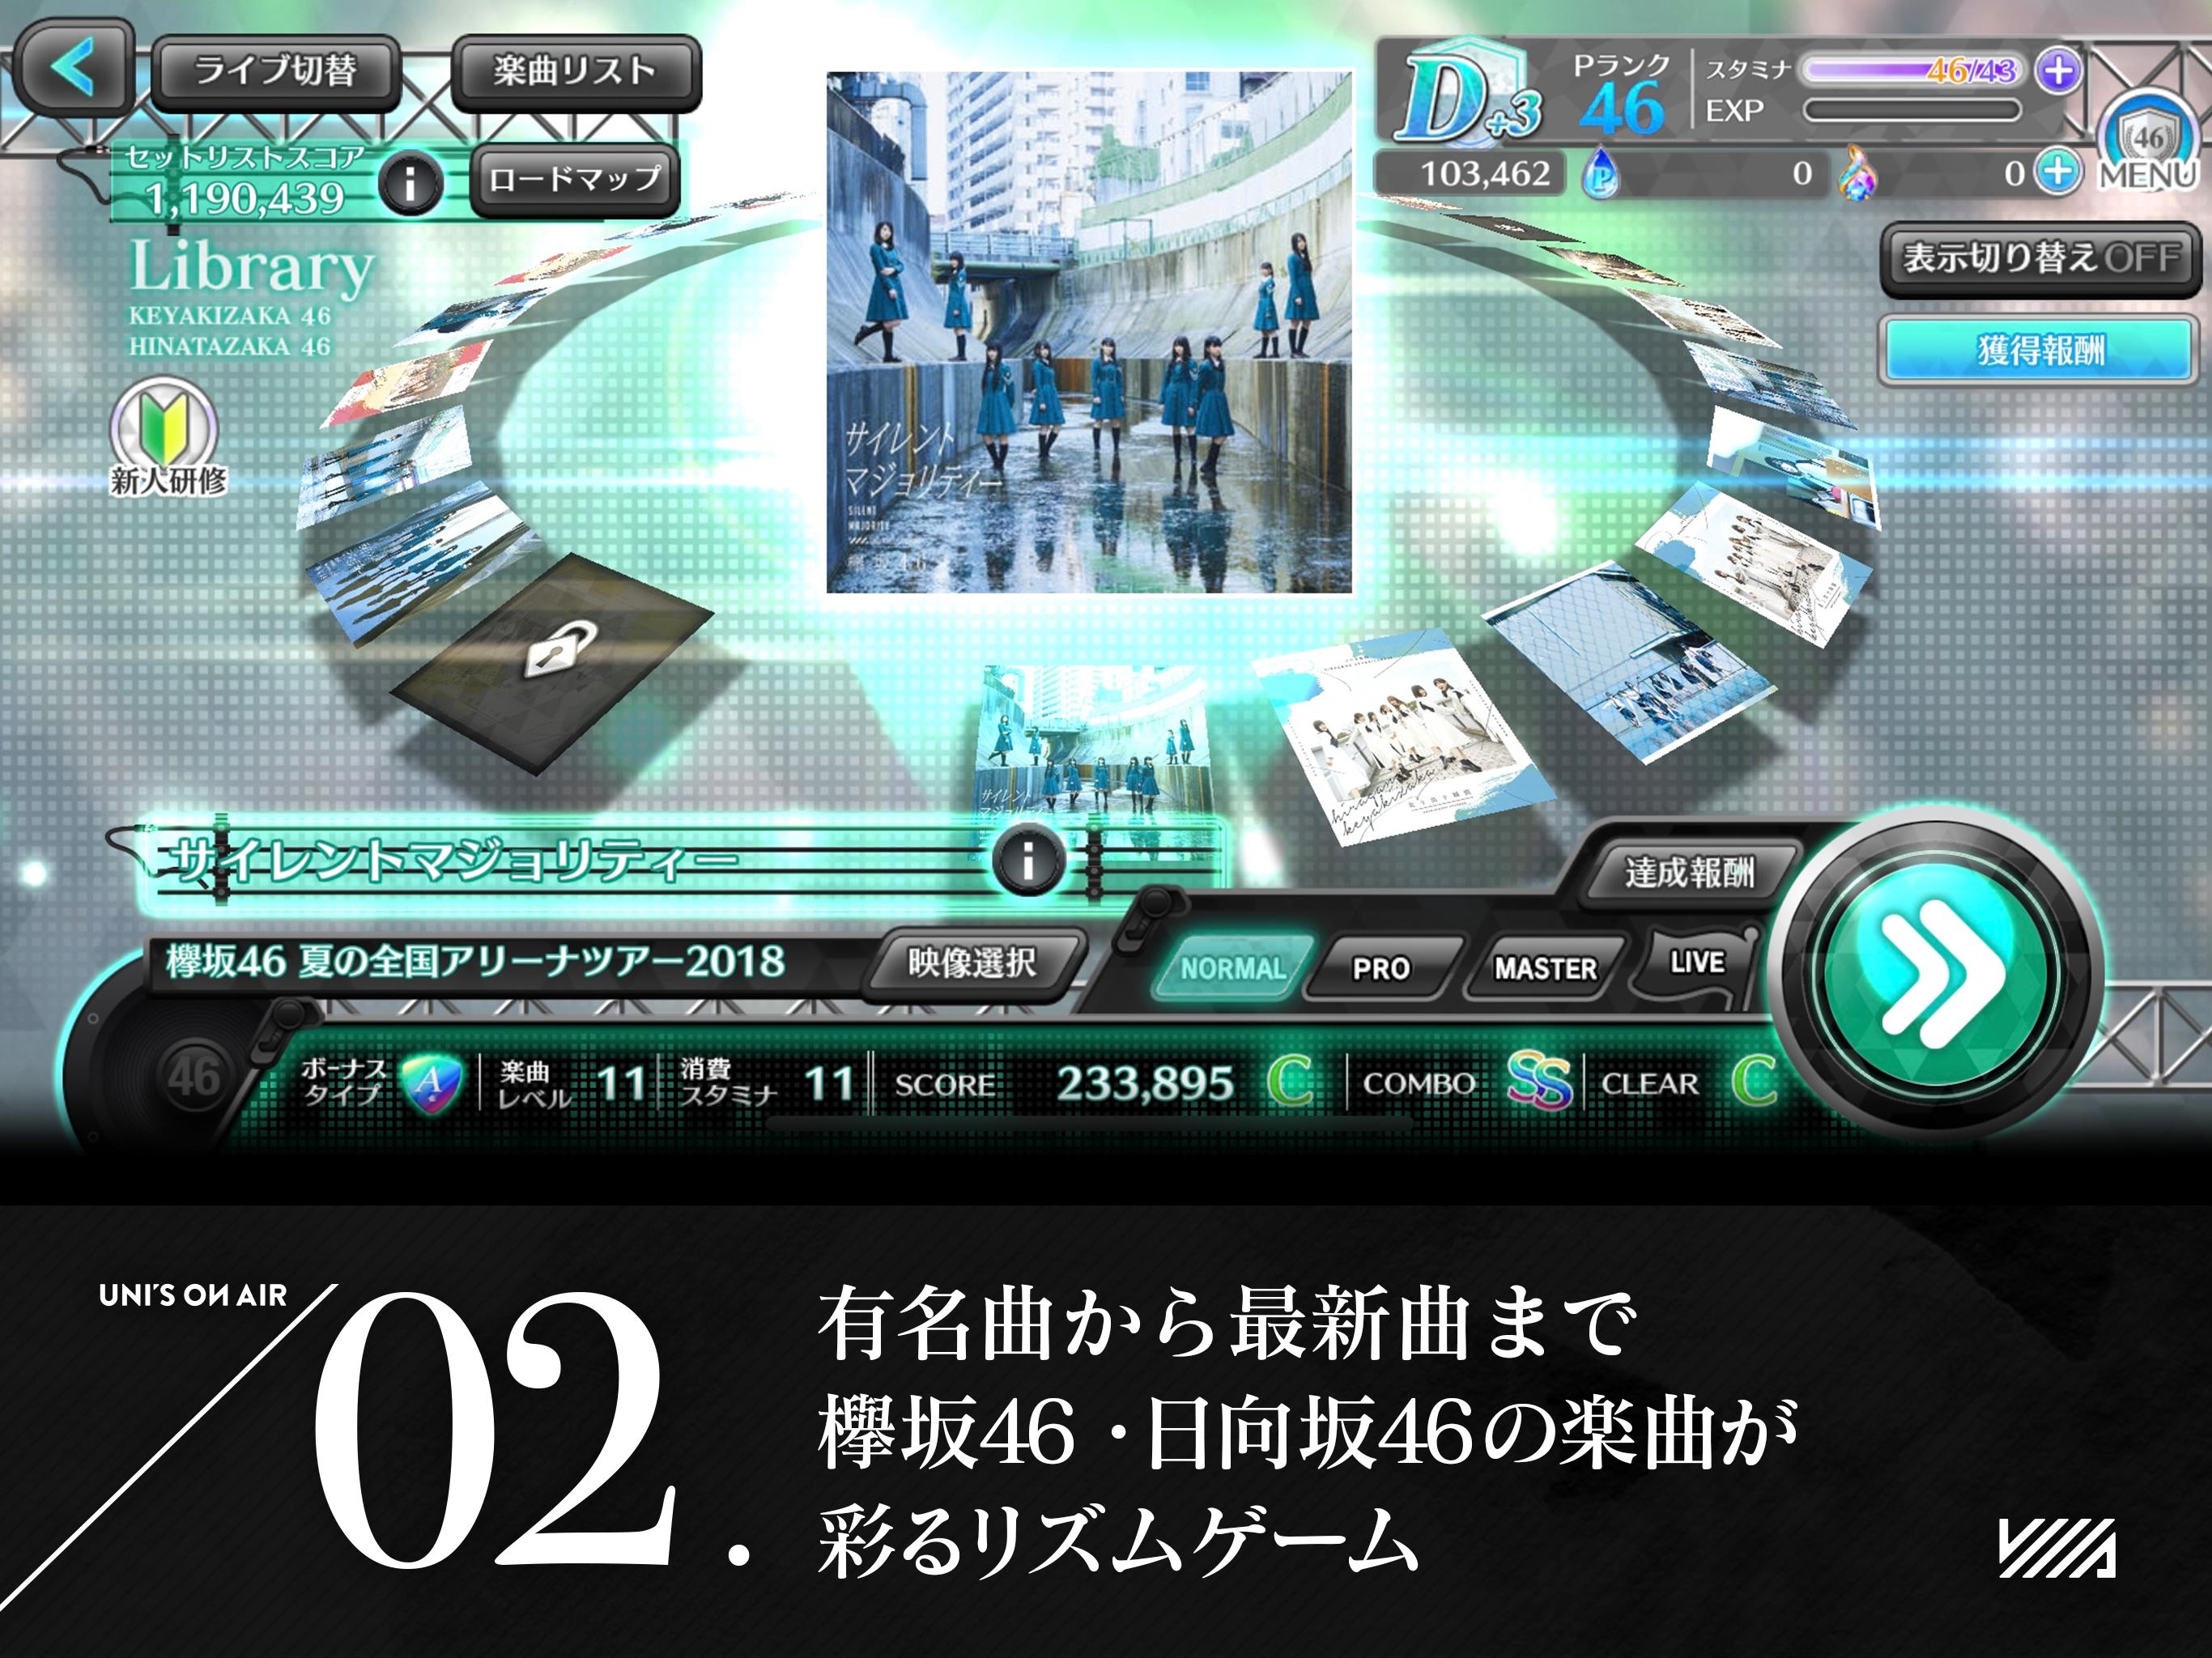 欅坂46日向坂46 Unis On Air For Android Apk Download - #U30b4 roblox